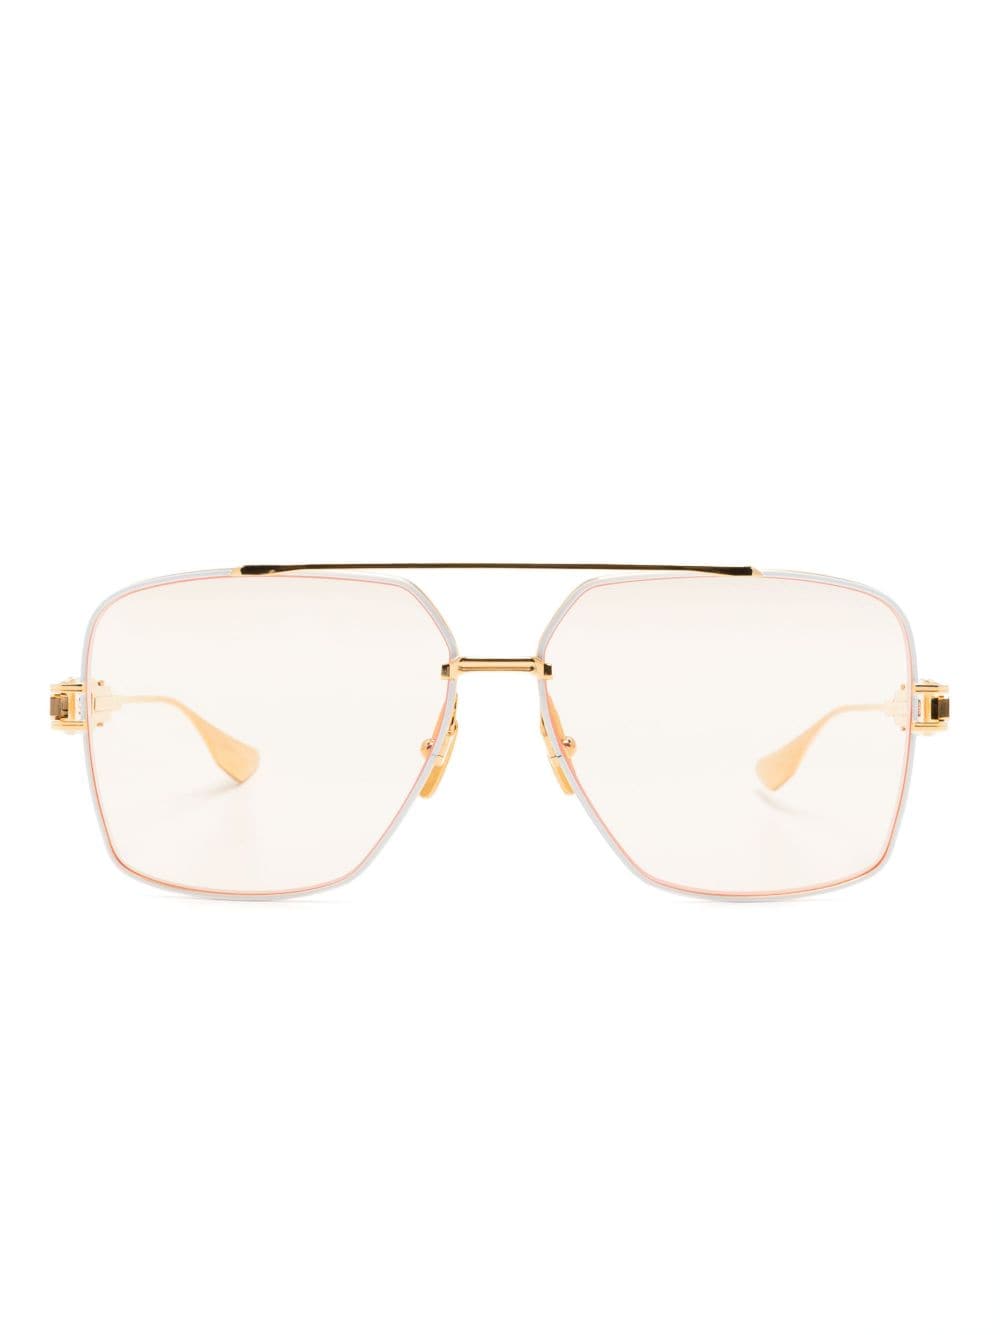 Dita Eyewear Grand Emperik rectangular-frame sunglasses - White von Dita Eyewear